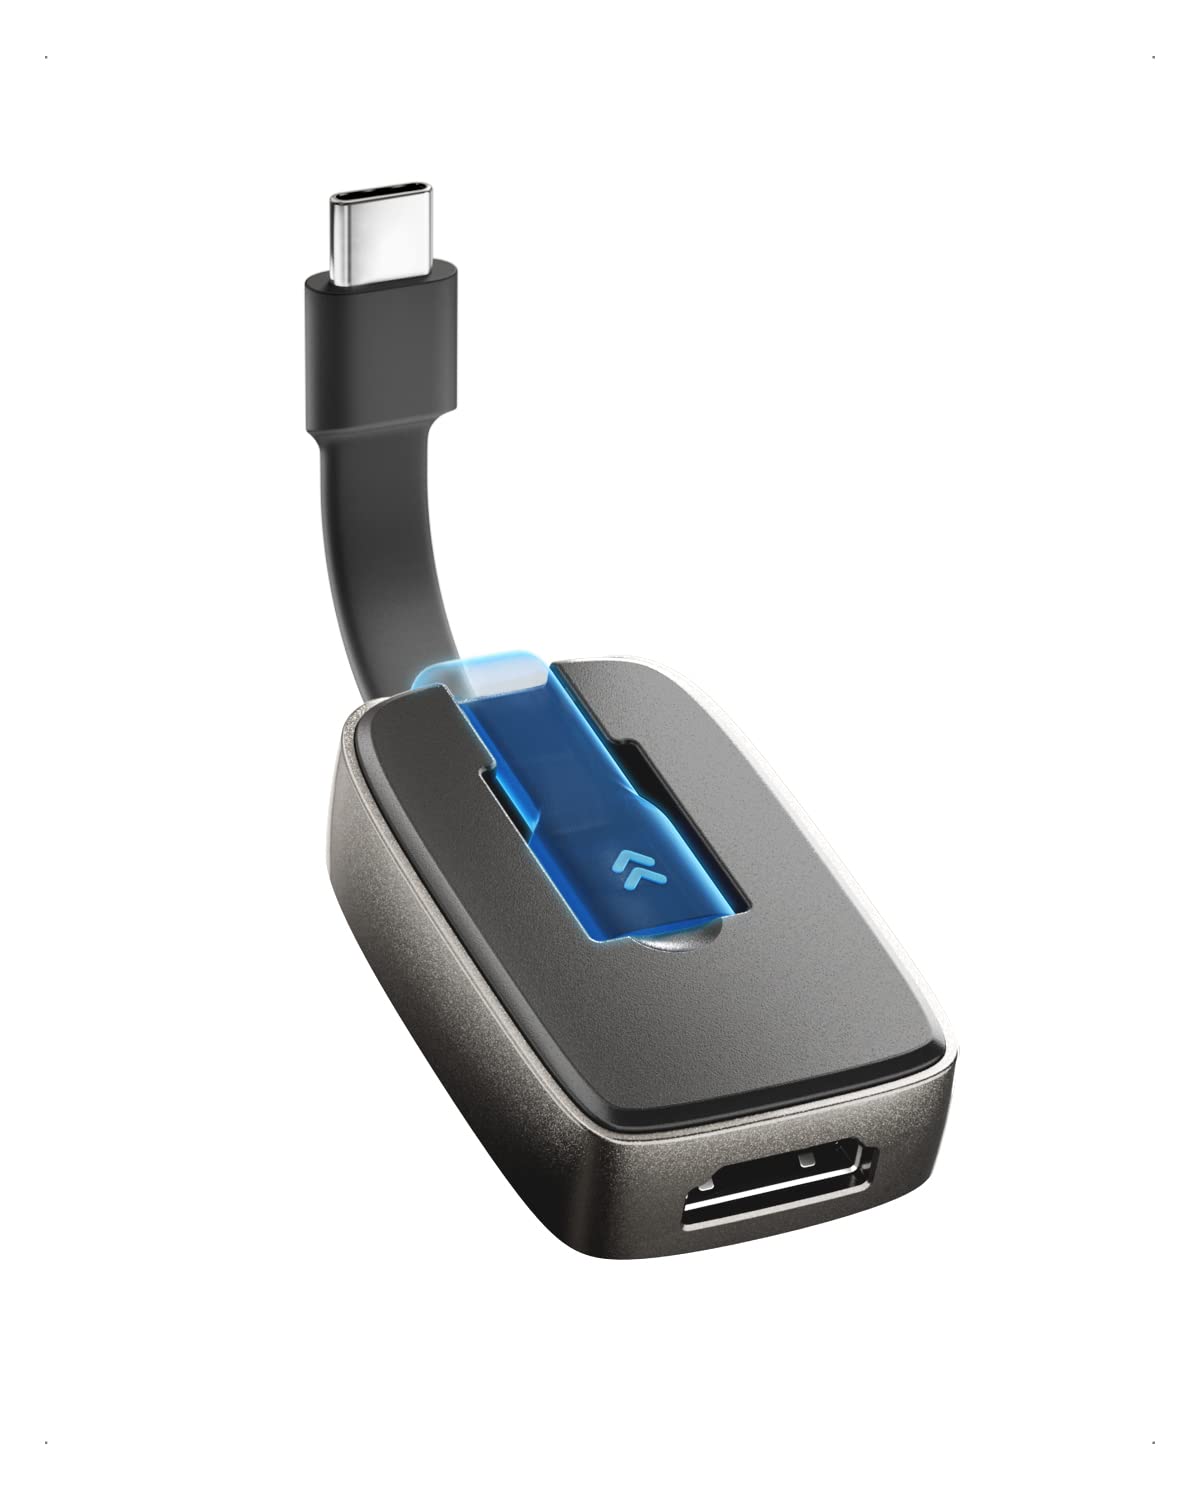 ・ 201398-BLK・【最新のHDMI 2.1規格】折りたたみ式ケーブル付きポータブル型8K USB Type C HDMI アダプタは最新のHDMI2.1に準拠し、8Kの未来に踏み出します。ケーブル収納機能を搭載したコンパクトなUSB C HDMI 2.1アダプタは、USB-Cポートをフル機能のHDMIポートに瞬時に変換して、外部プロジェター、モニターまたはテレビを接続でき、持ち運びしても自宅・オフィスで使っても最適です。・【8K@60Hz & 4K@120Hz高画質】ポータブルHDMI 2.1 USB Cアダプタは、4K 120Hzおよび8K 60Hzビデオを含む最新規格をサポートし、比類のないビジュアル忠実度を実現します。HDRおよび非圧縮のフルRGB 4:4:4 ビデオにより、鮮明でリアルな超高解像度のビデオと超高速リフレッシュレートが楽しめます。USB C HDMIアダプタはサラウンドサウンドオーディオをサポートし、究極のサウンド体験を提供できます。・【幅広い互換性】超高解像度ビデオを活用できる最新のハードウェアを採用され；USB C HDMIケーブルアダプ